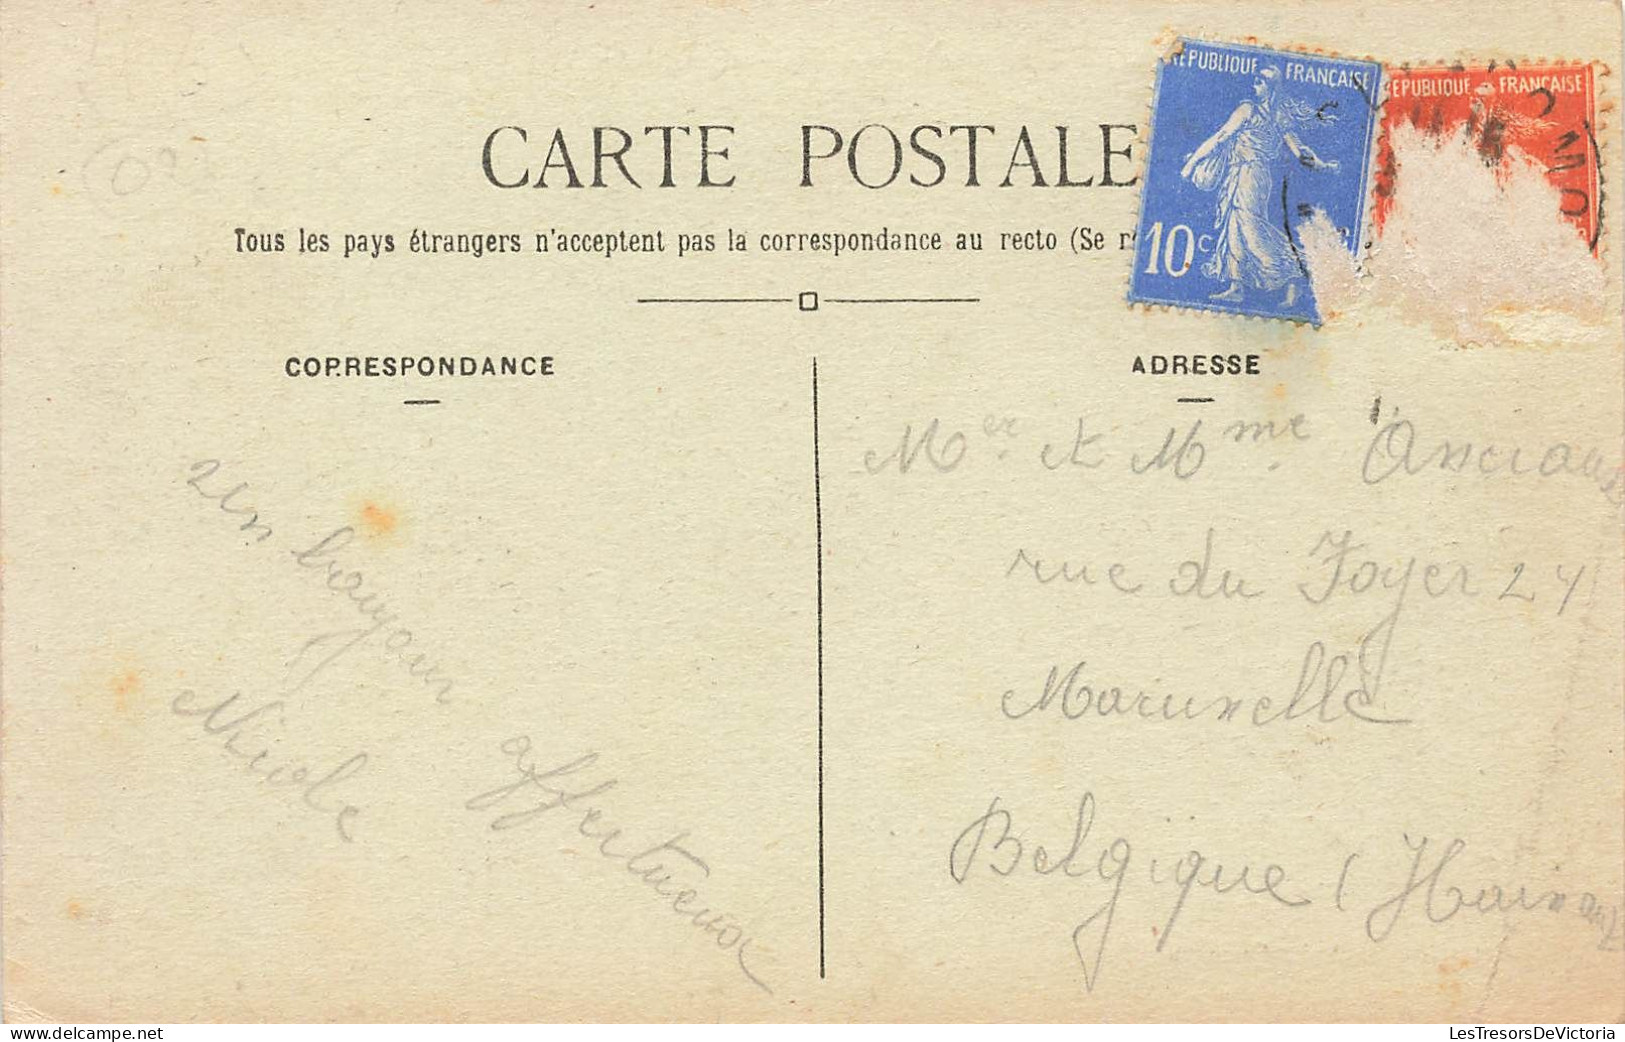 France - Marly Gomont - La Gare Et Le Quai - Artistic Pearl - Carte Postale Ancienne - Vervins